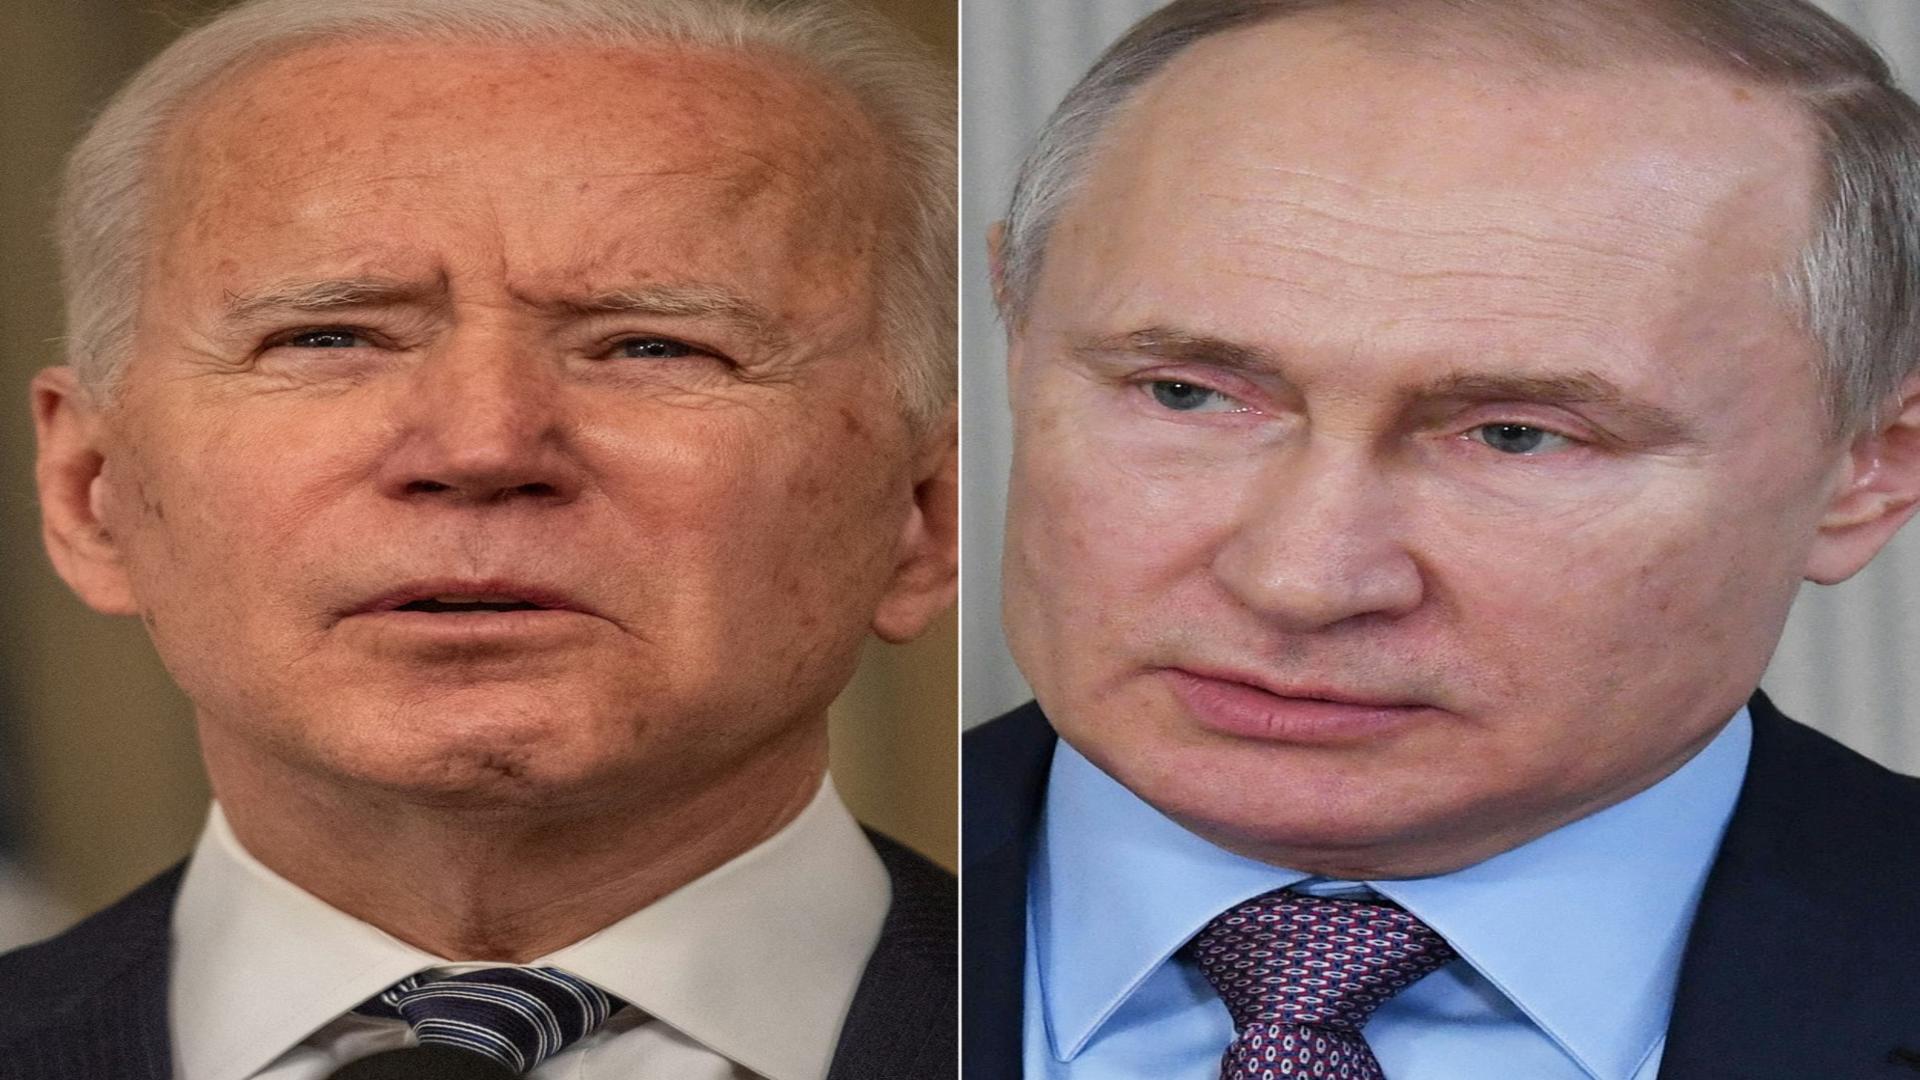 Joe Biden și Vladimir Putin